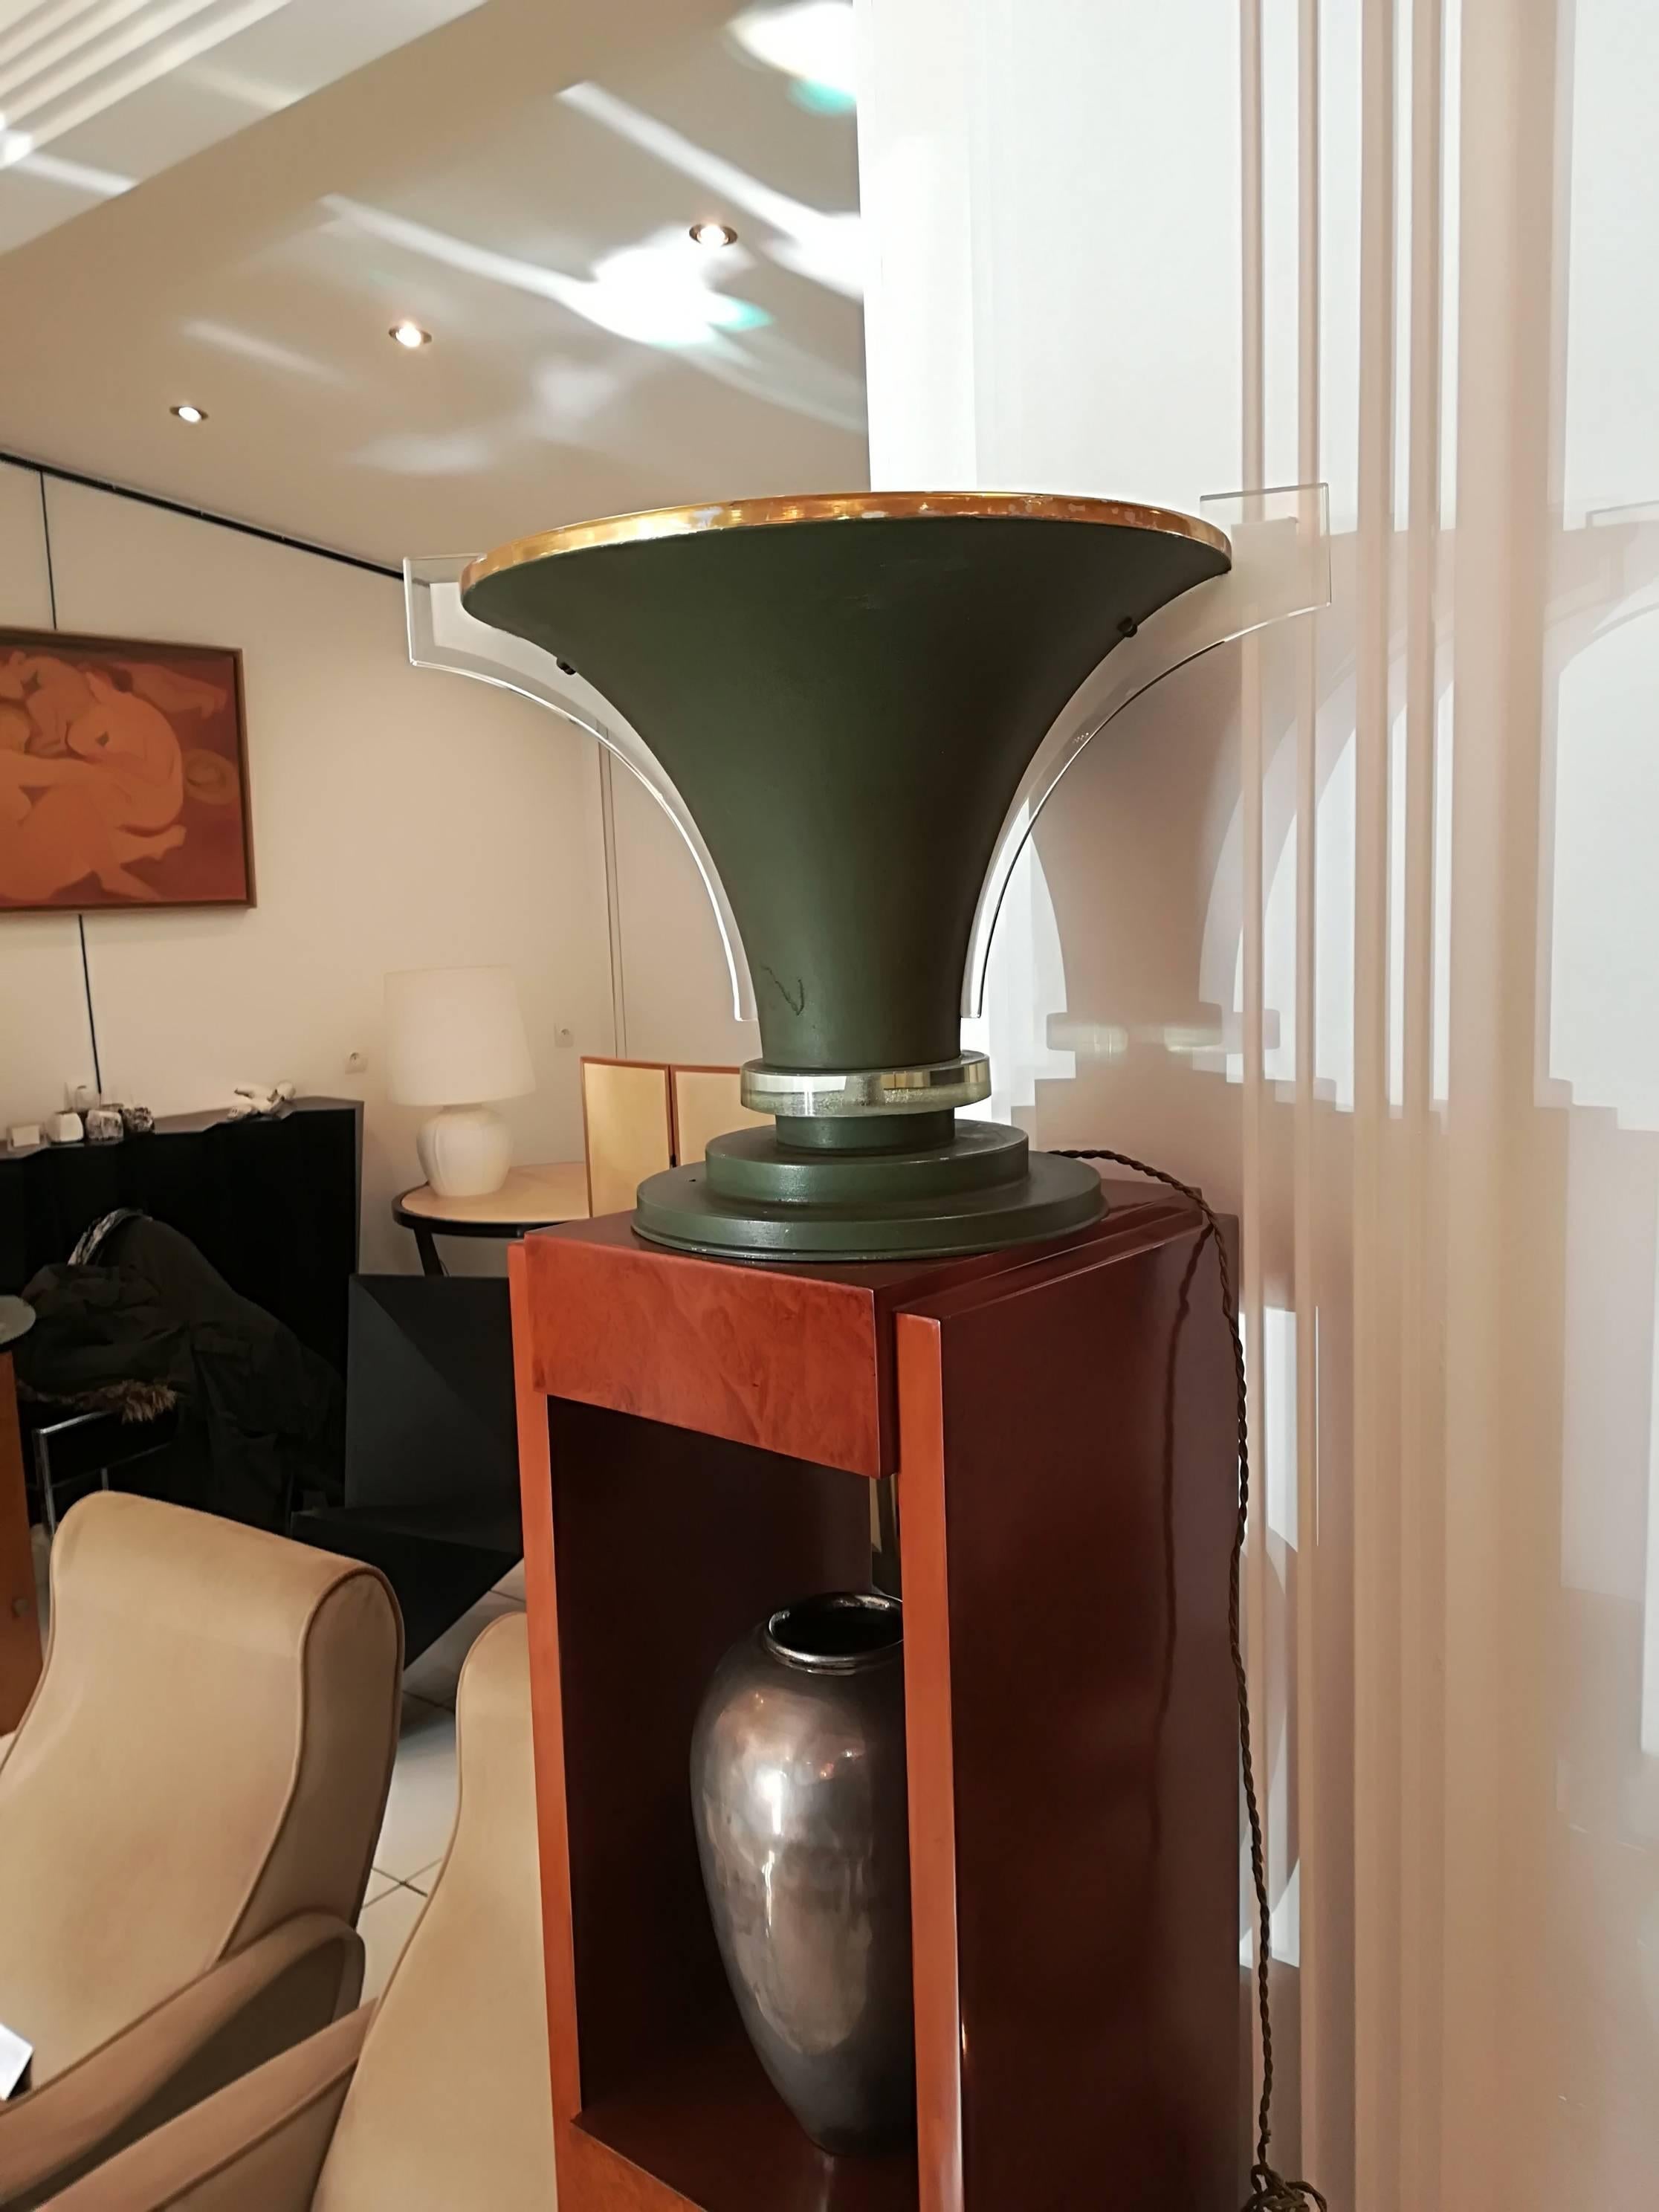 Lampe de table Art Déco, circa 1930, métal et verre, parfait sur un piédestal (cf 2ème photo)
Dimensions : Diamètre 35cm
Diamètre de la base 24 cm.